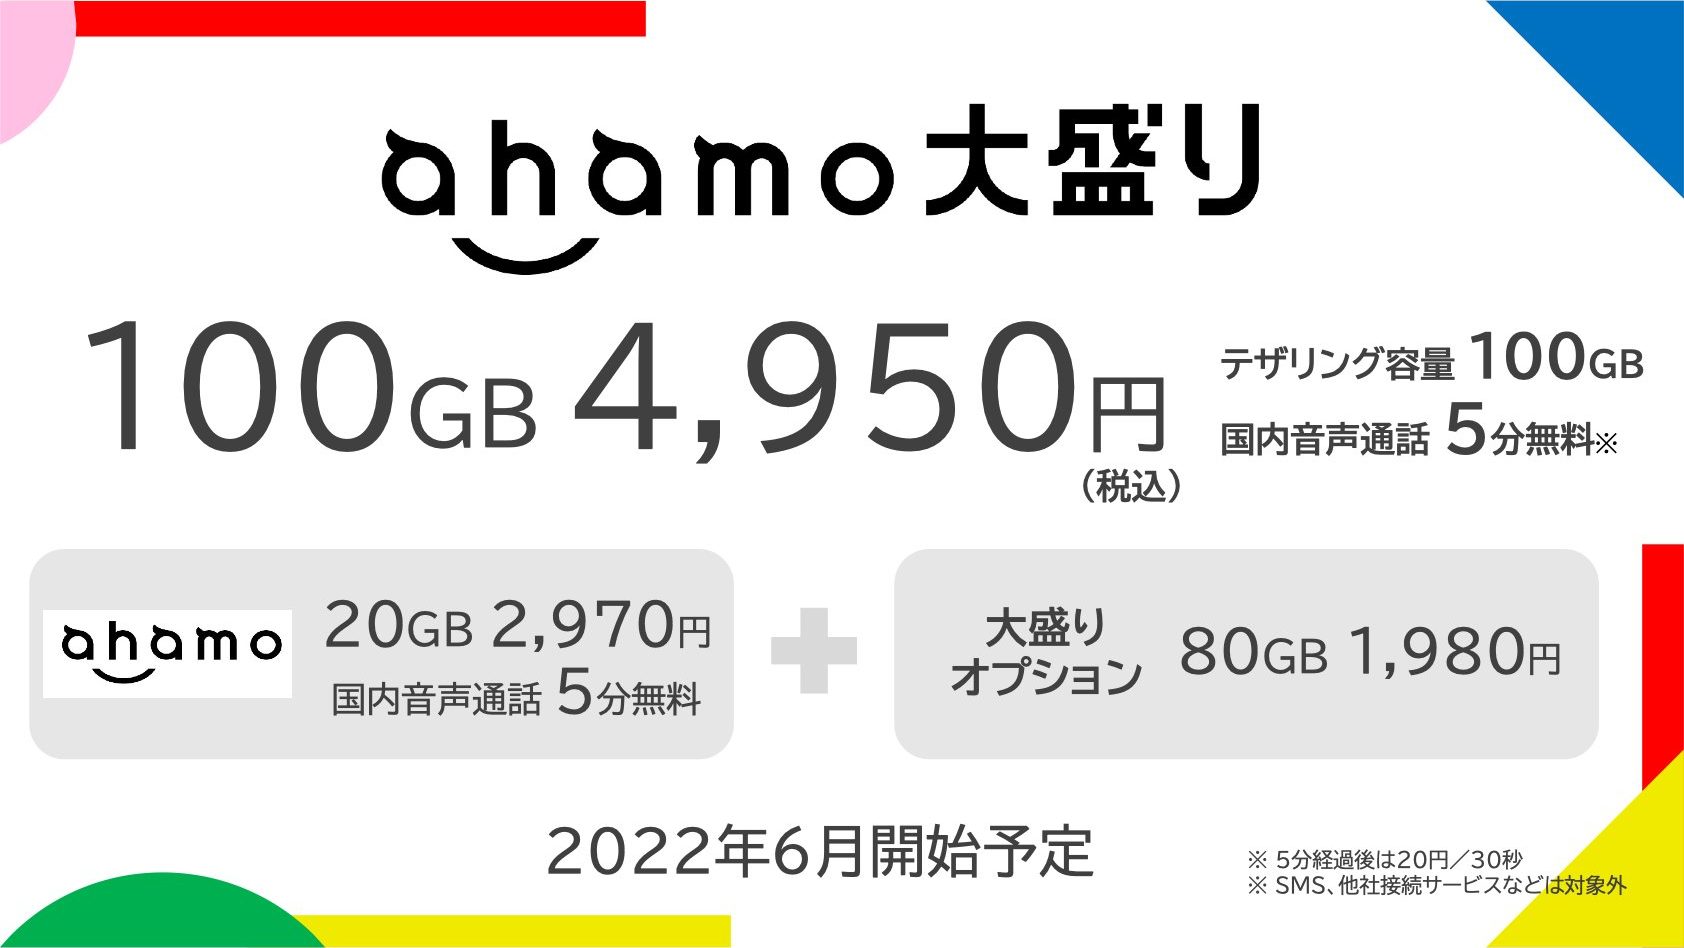 月額4,950円で100GB使えるahamoの大容量オプション「ahamo大盛り」を2022年6月提供開始！